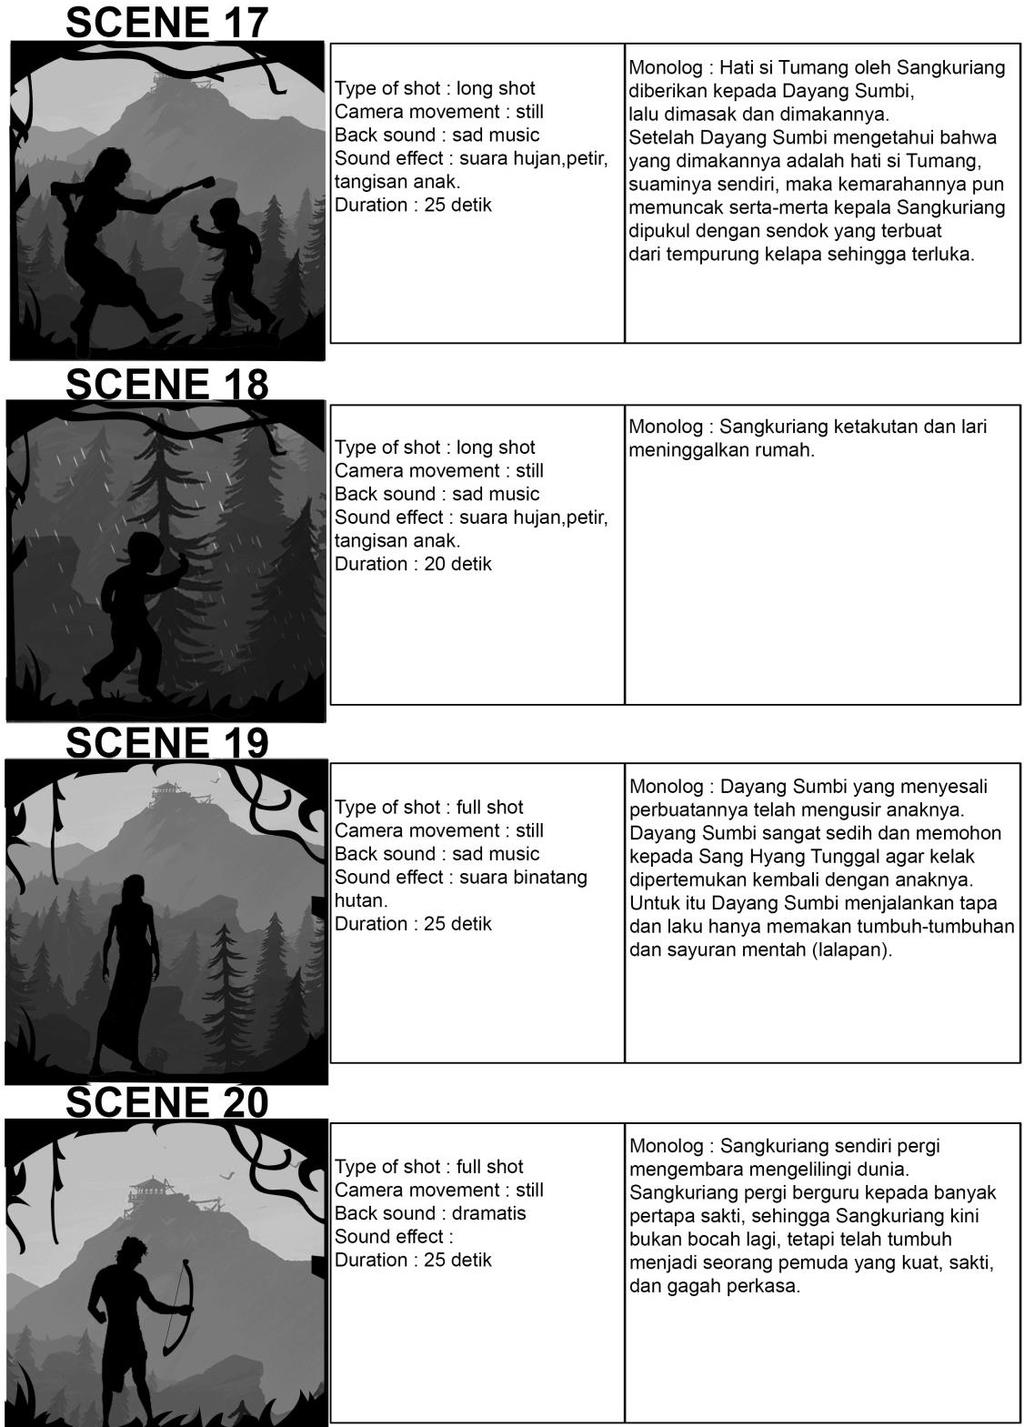 Gambar 27 Storyline scene 17-20